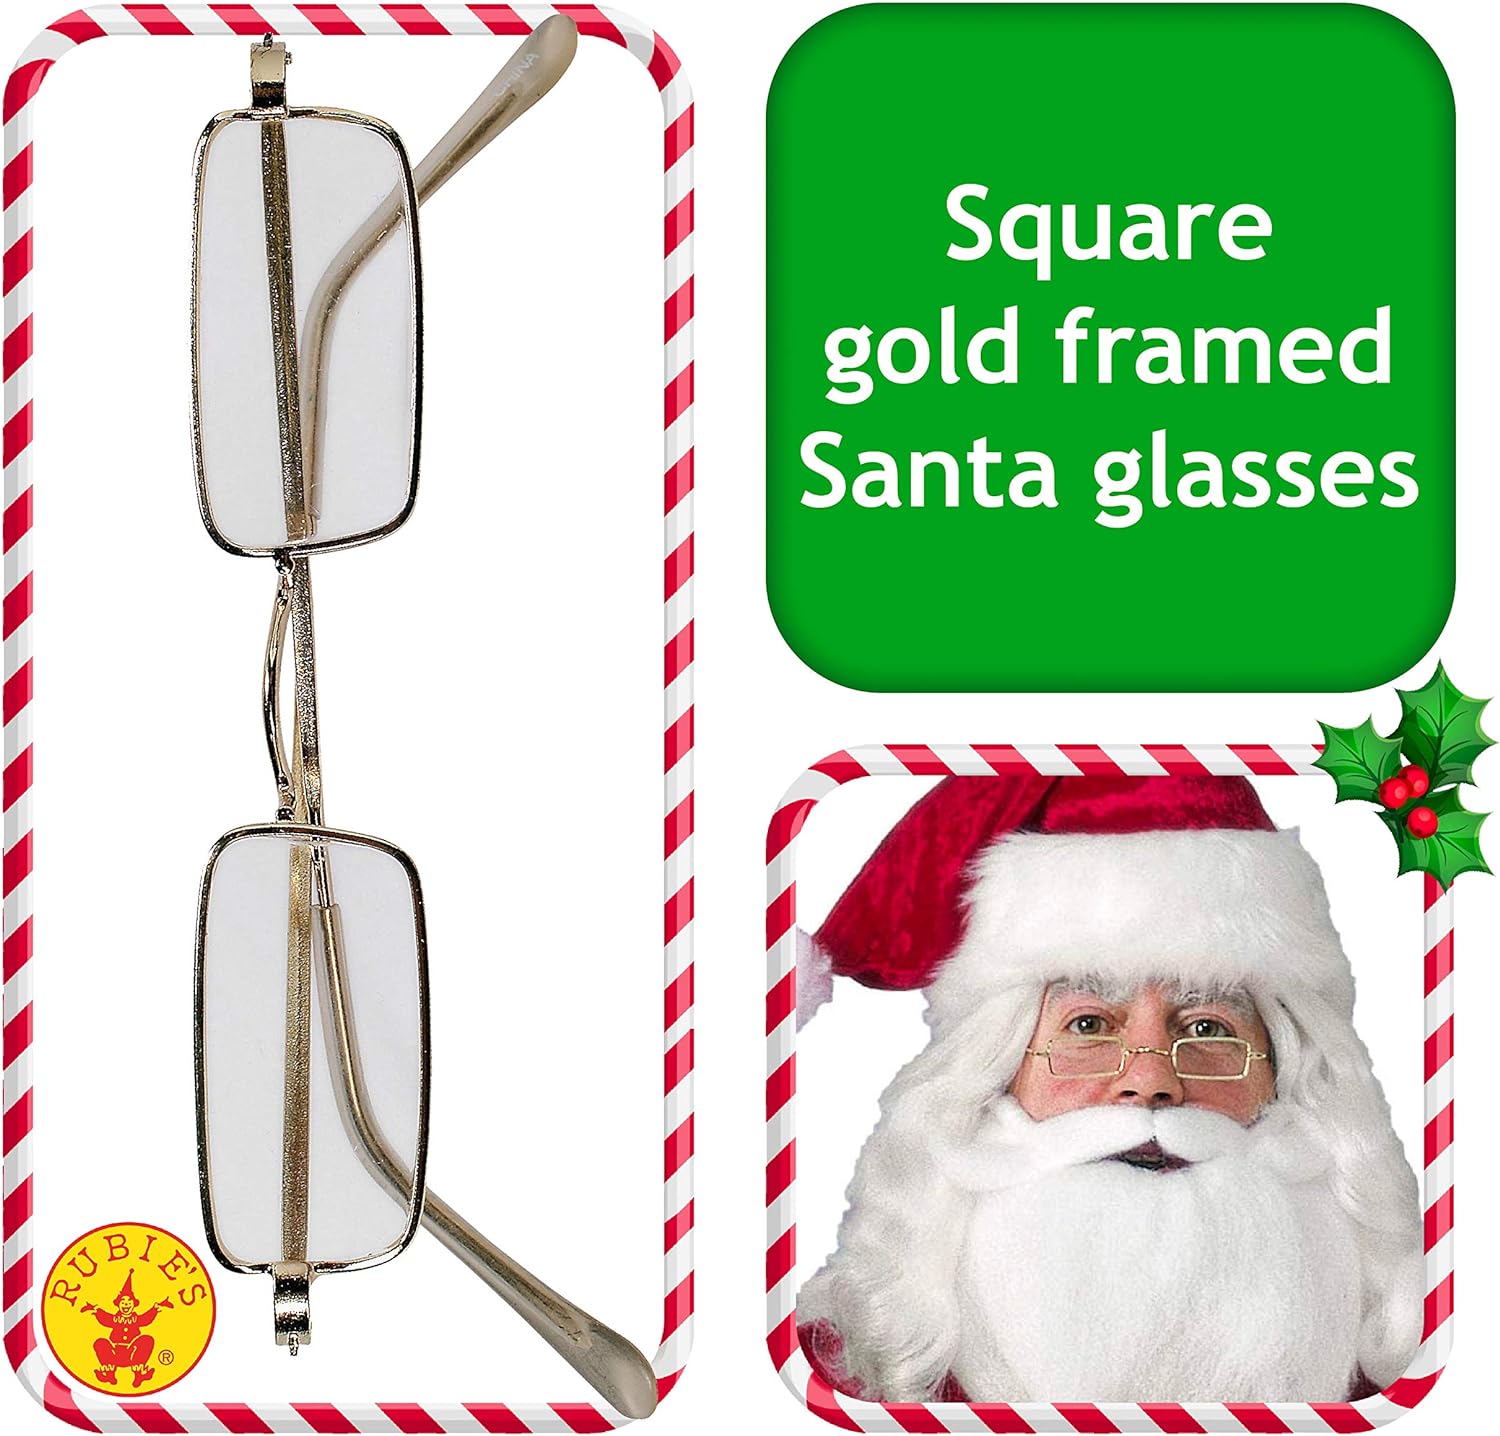 Square Santa Glasses Costume Accessory - image 2 of 4